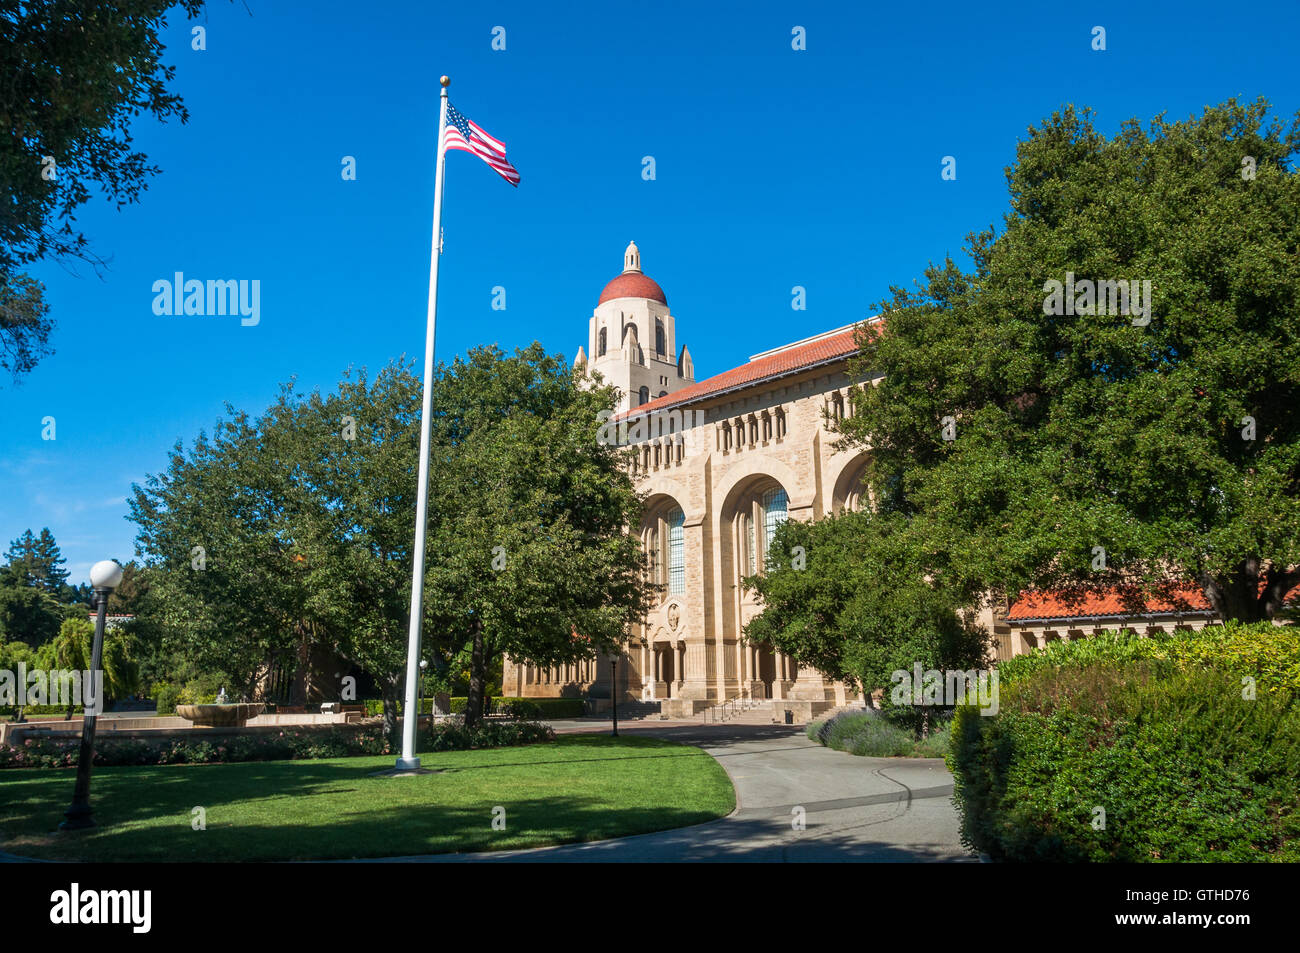 Campus de l'Université de Stanford à Palo Alto, Californie Banque D'Images